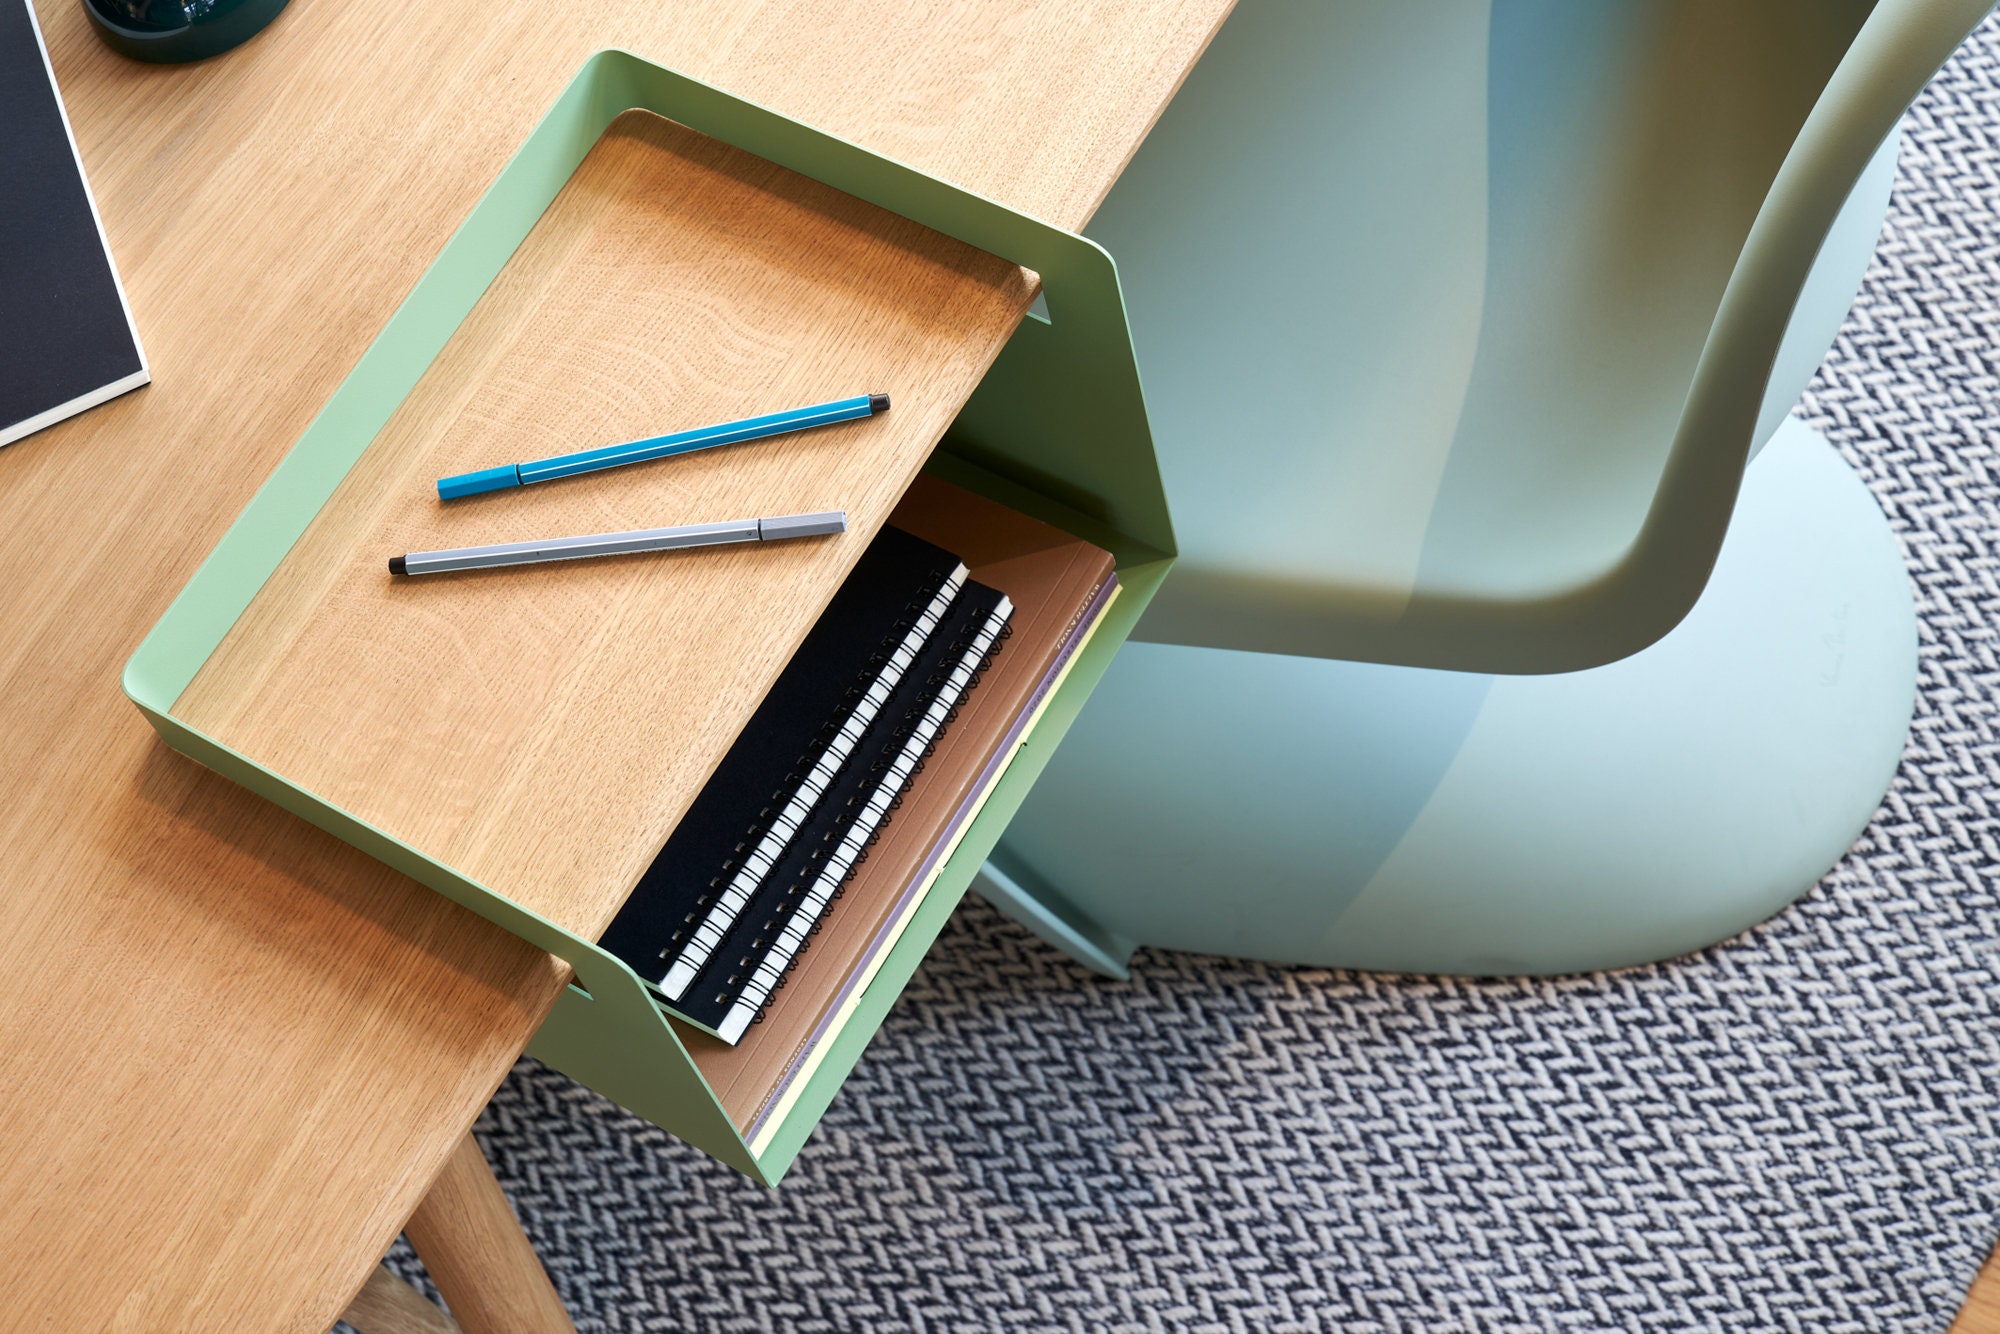 Comprar Cajón debajo del escritorio, organizador de escritorio oculto,  bandeja para lápices, cajón organizador debajo del escritorio,  almacenamiento para cuadernos, bolígrafos, lápices, cajas de llaves